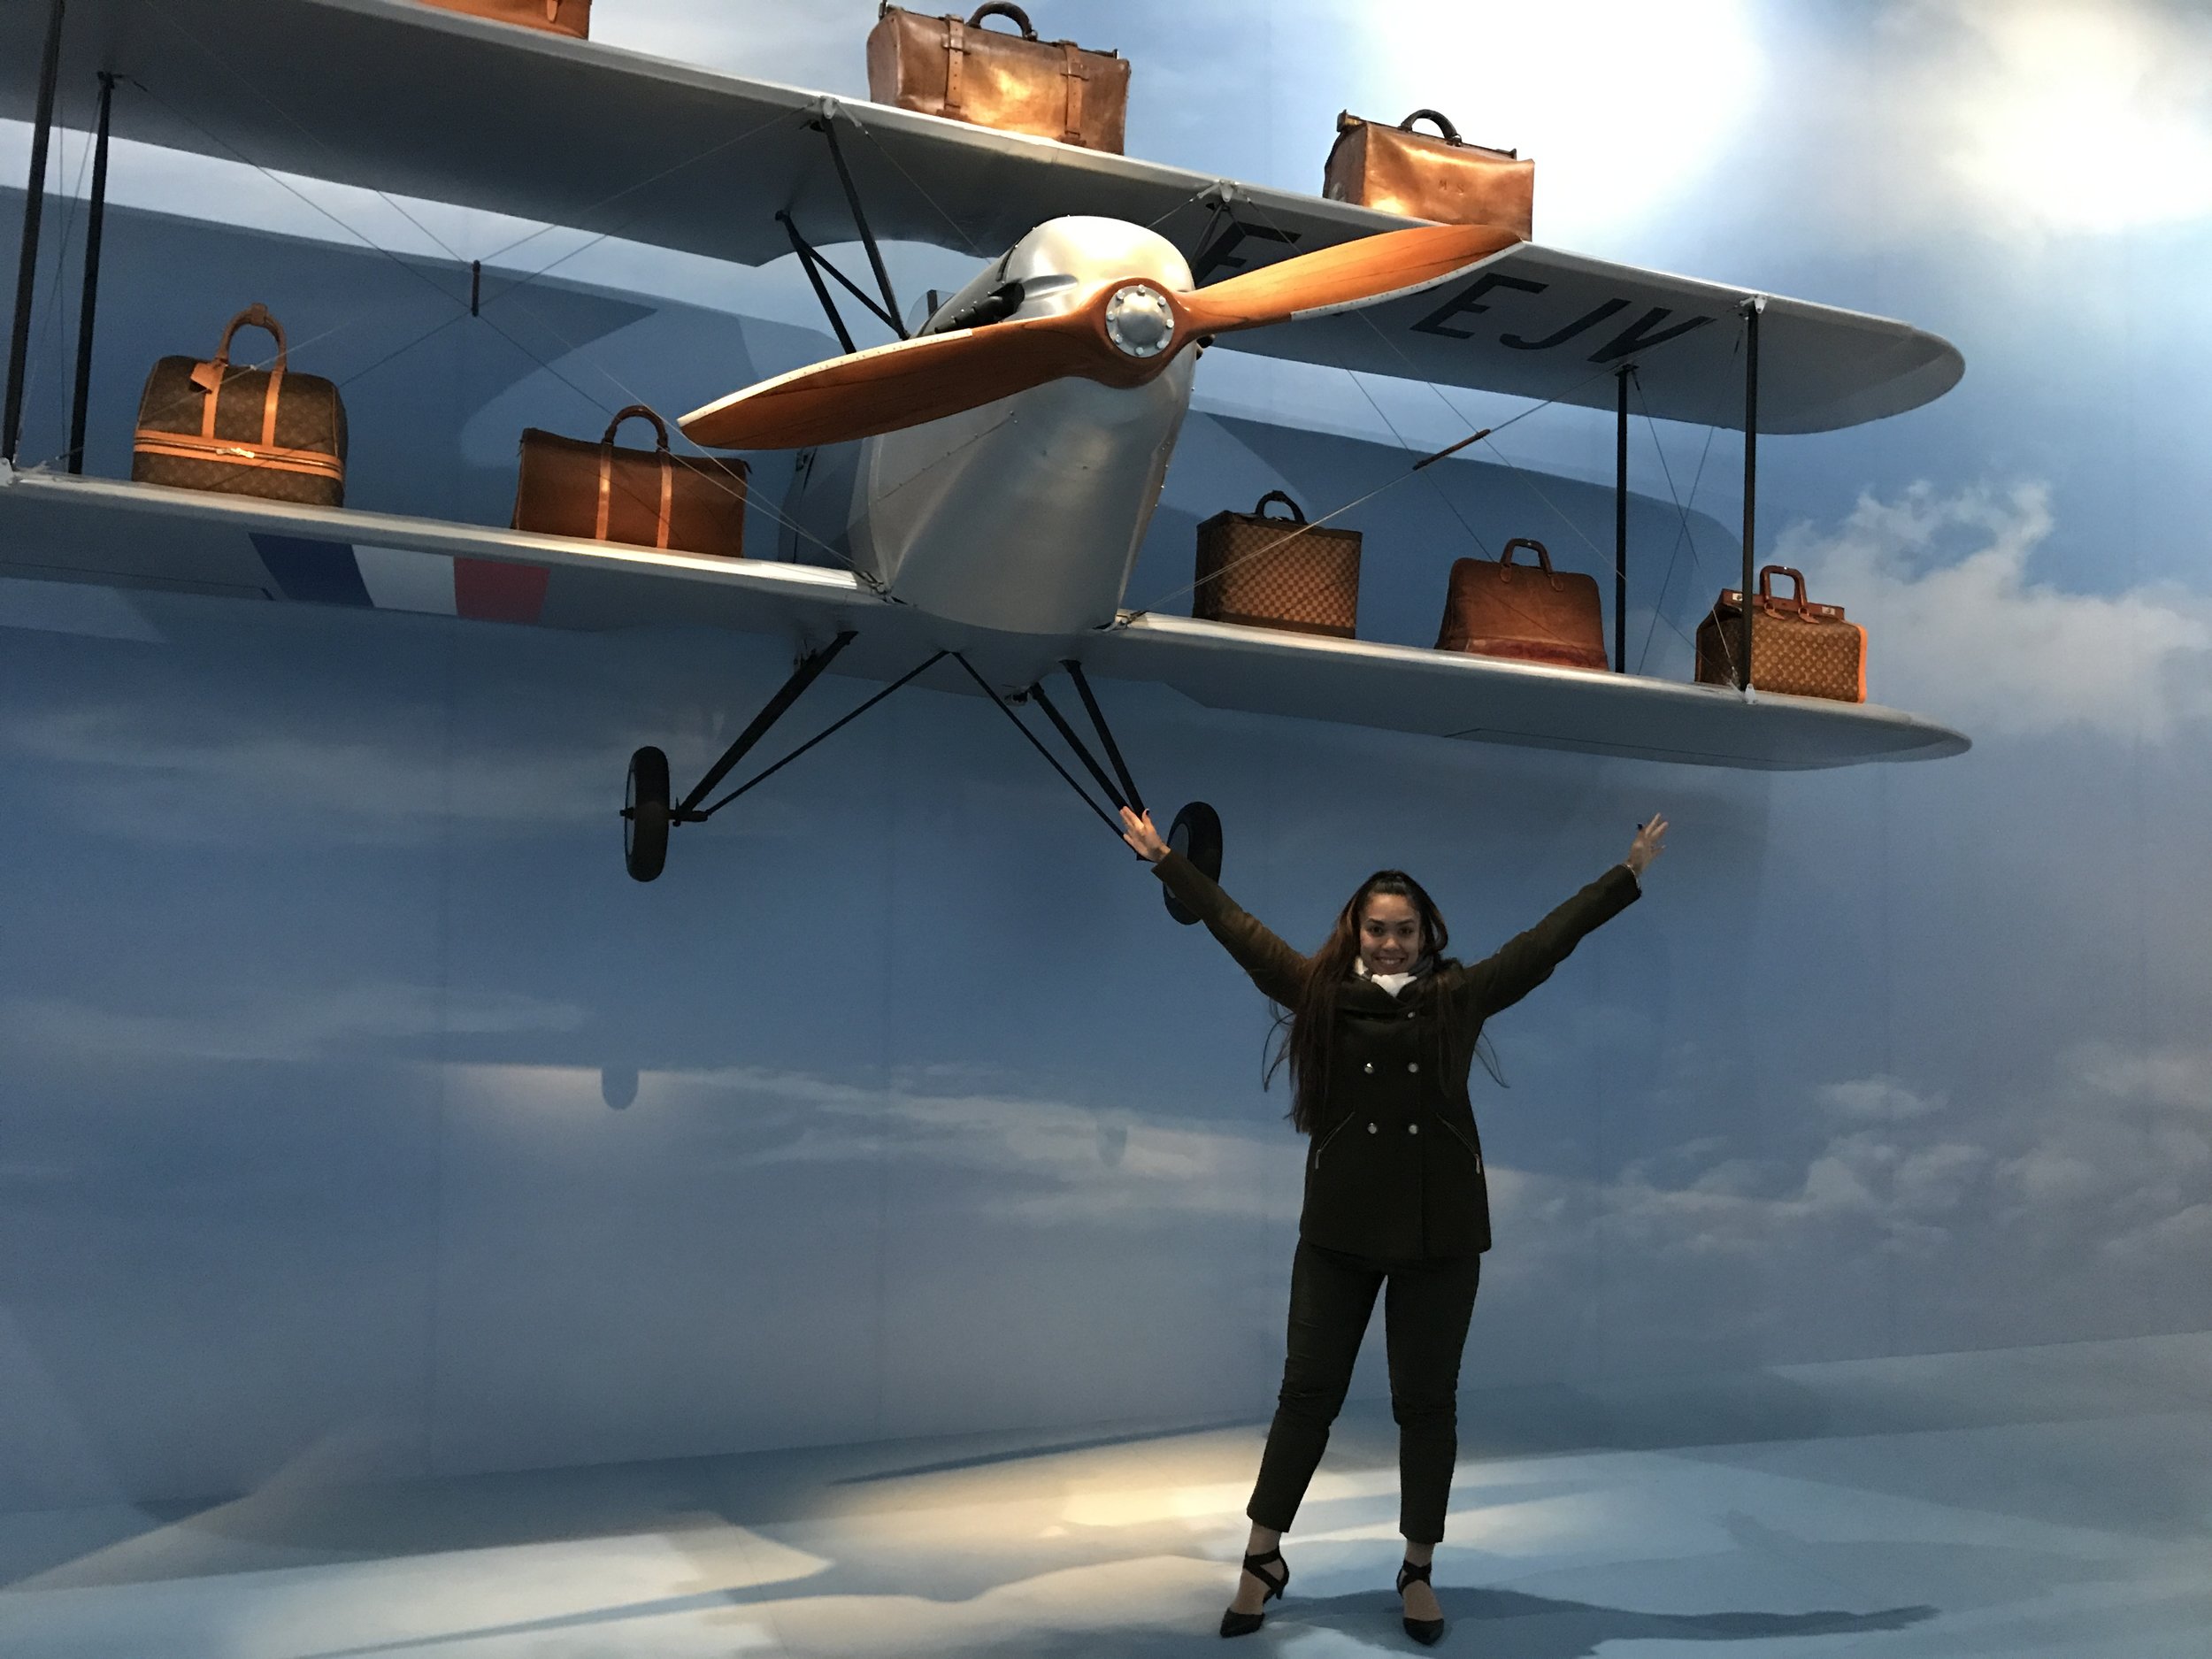 louis Vuitton exhibition plane